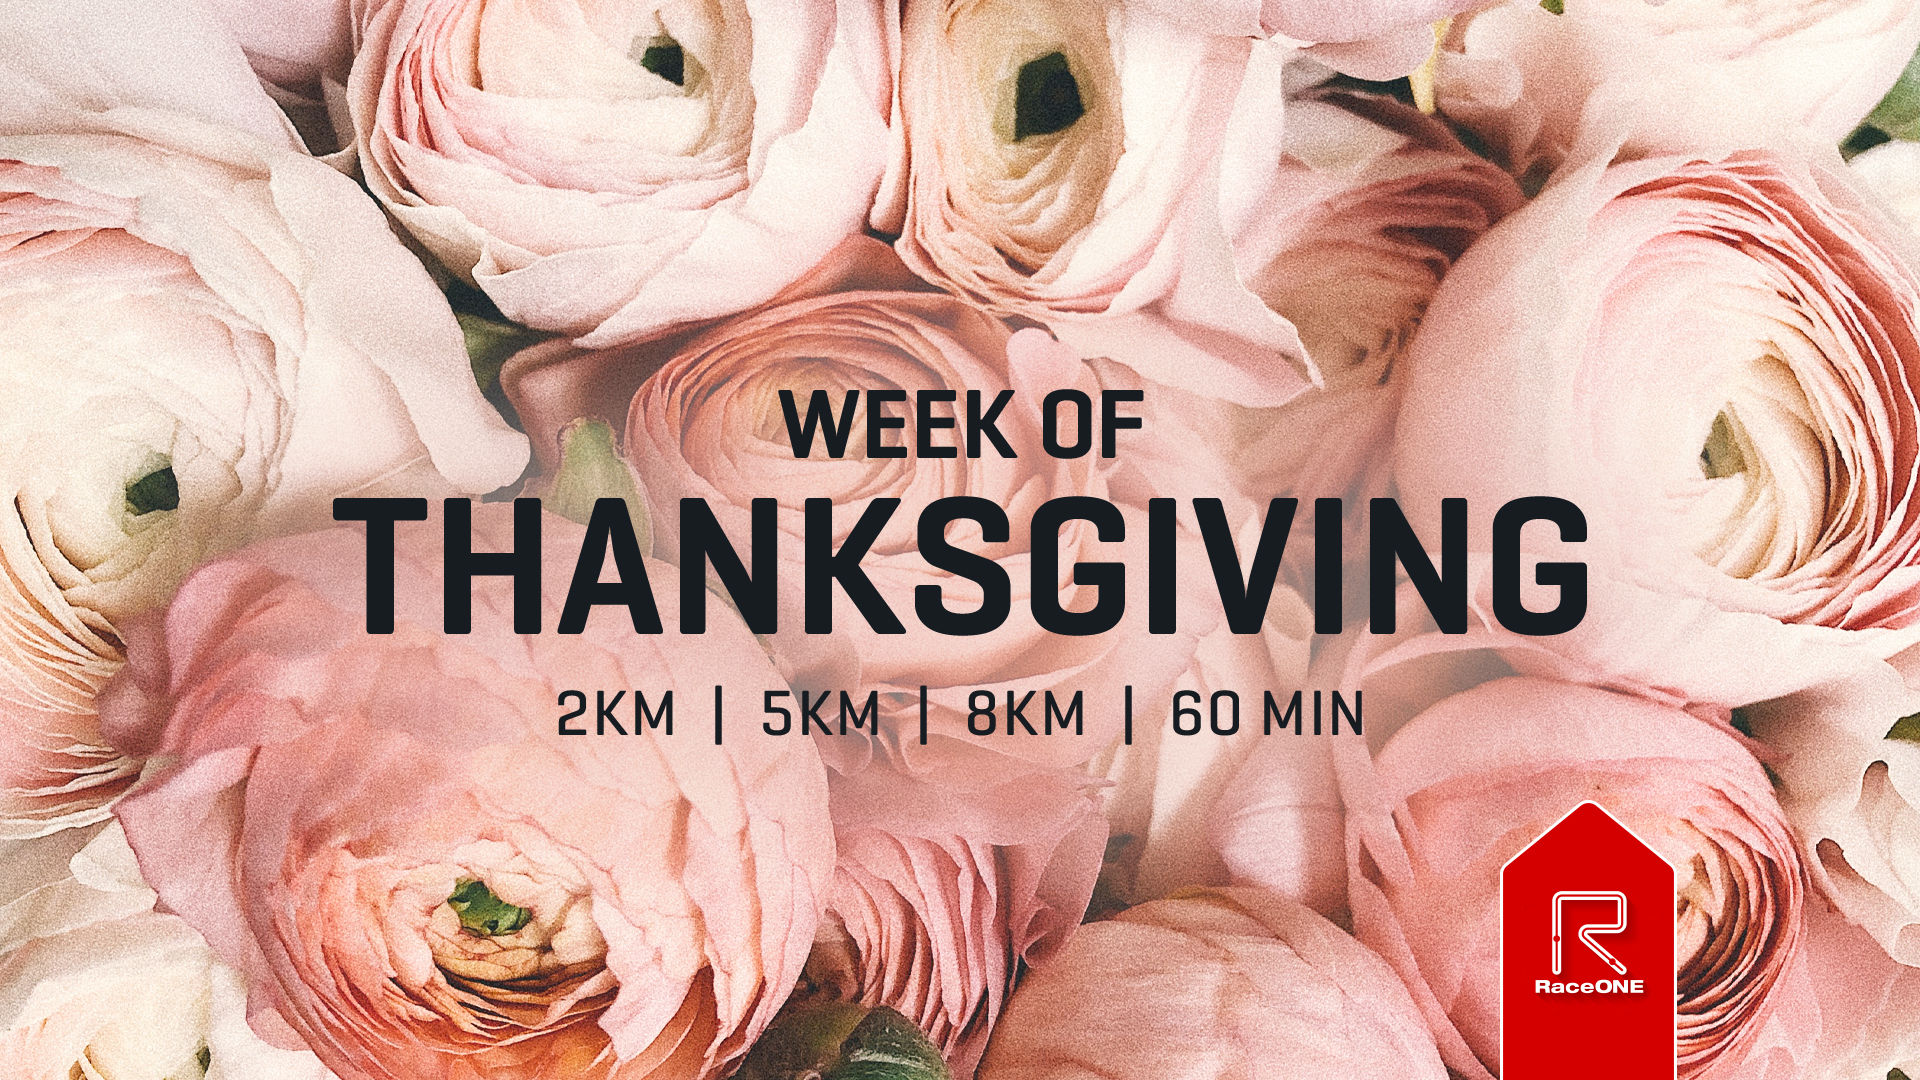 Week of Thanksgiving - 60min